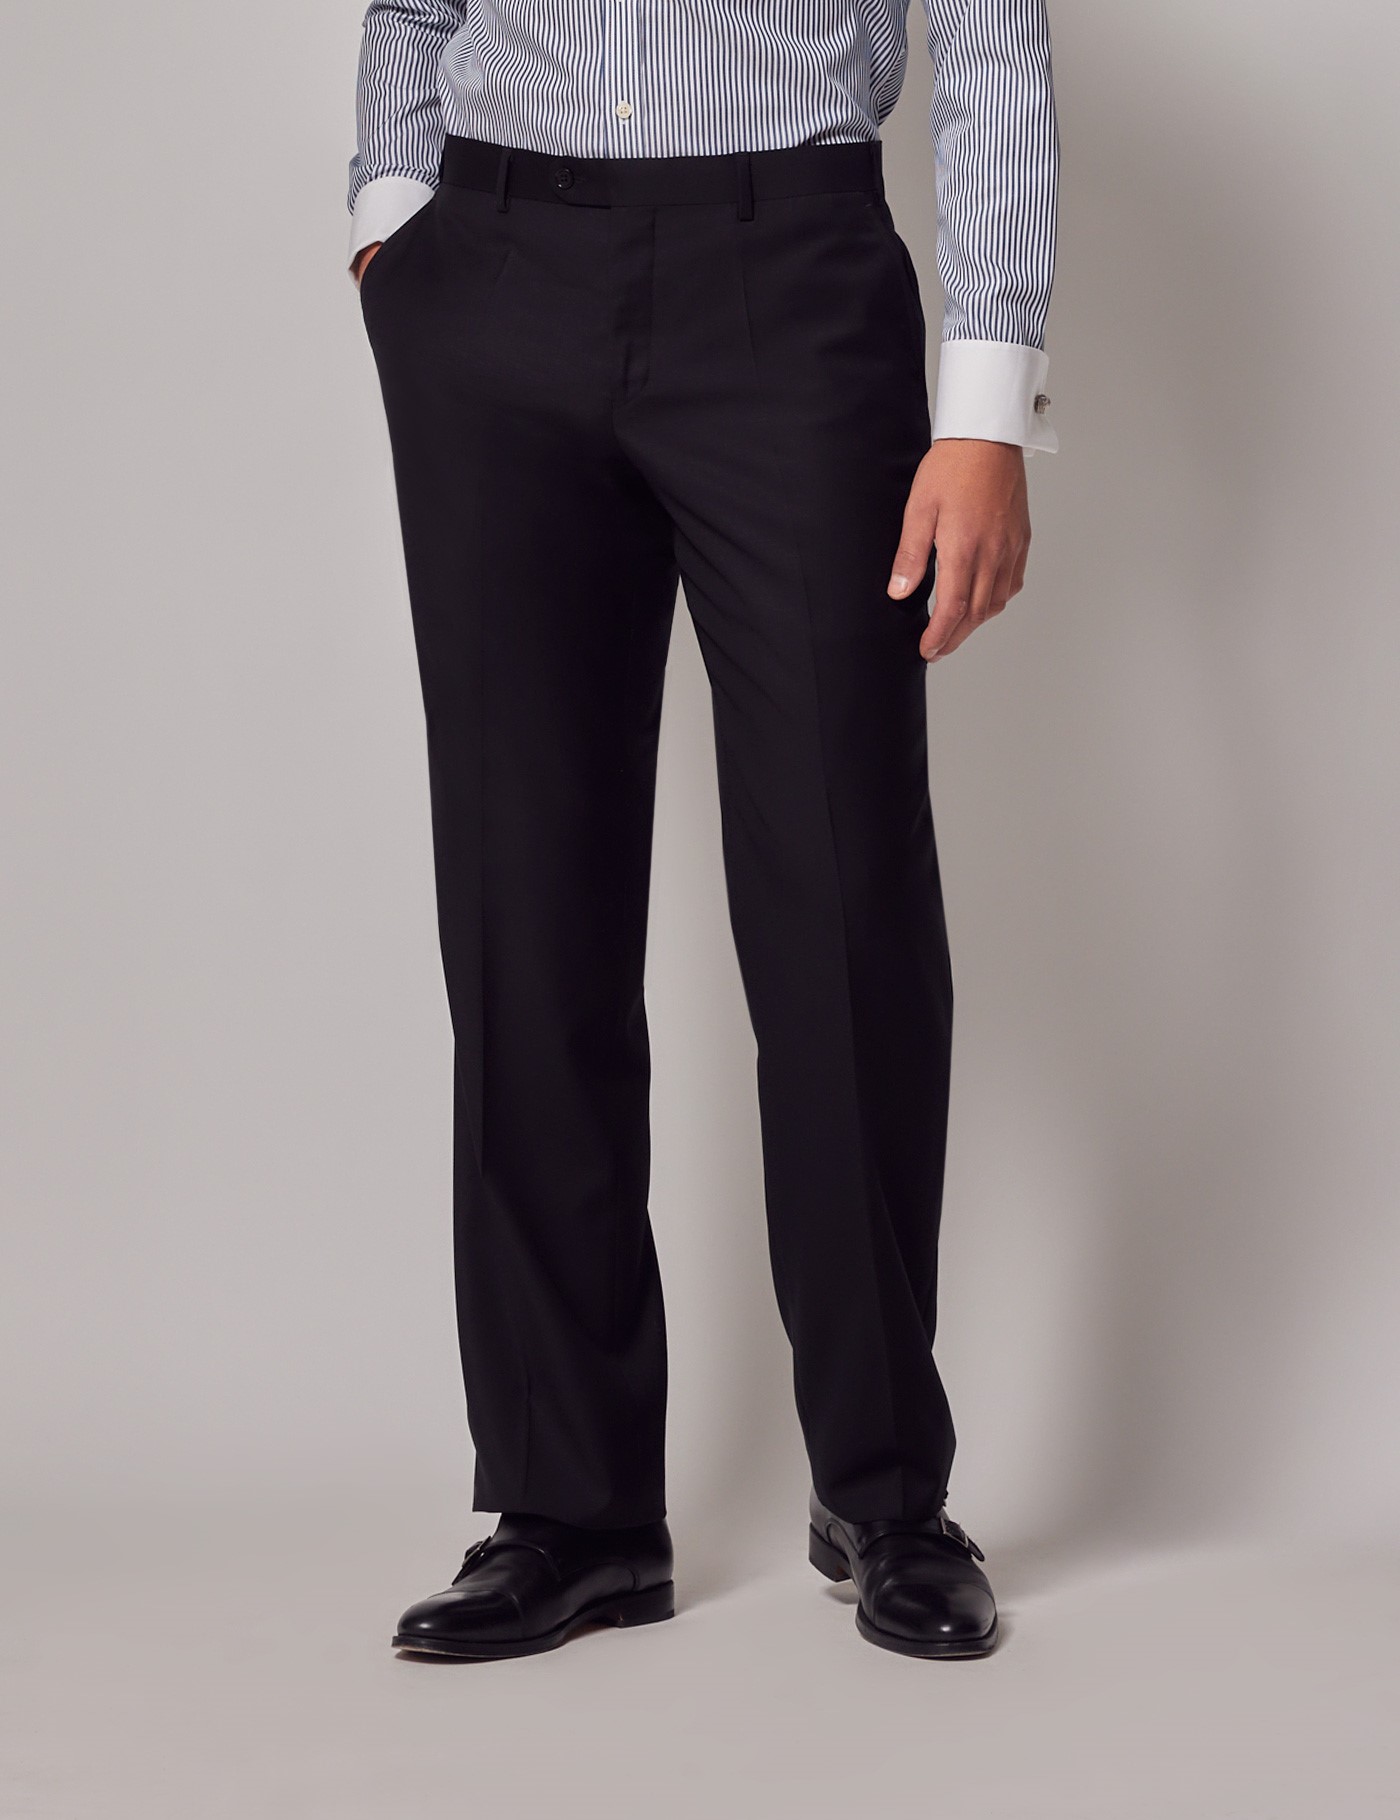 Men's Black Twill Classic Fit Suit Pants